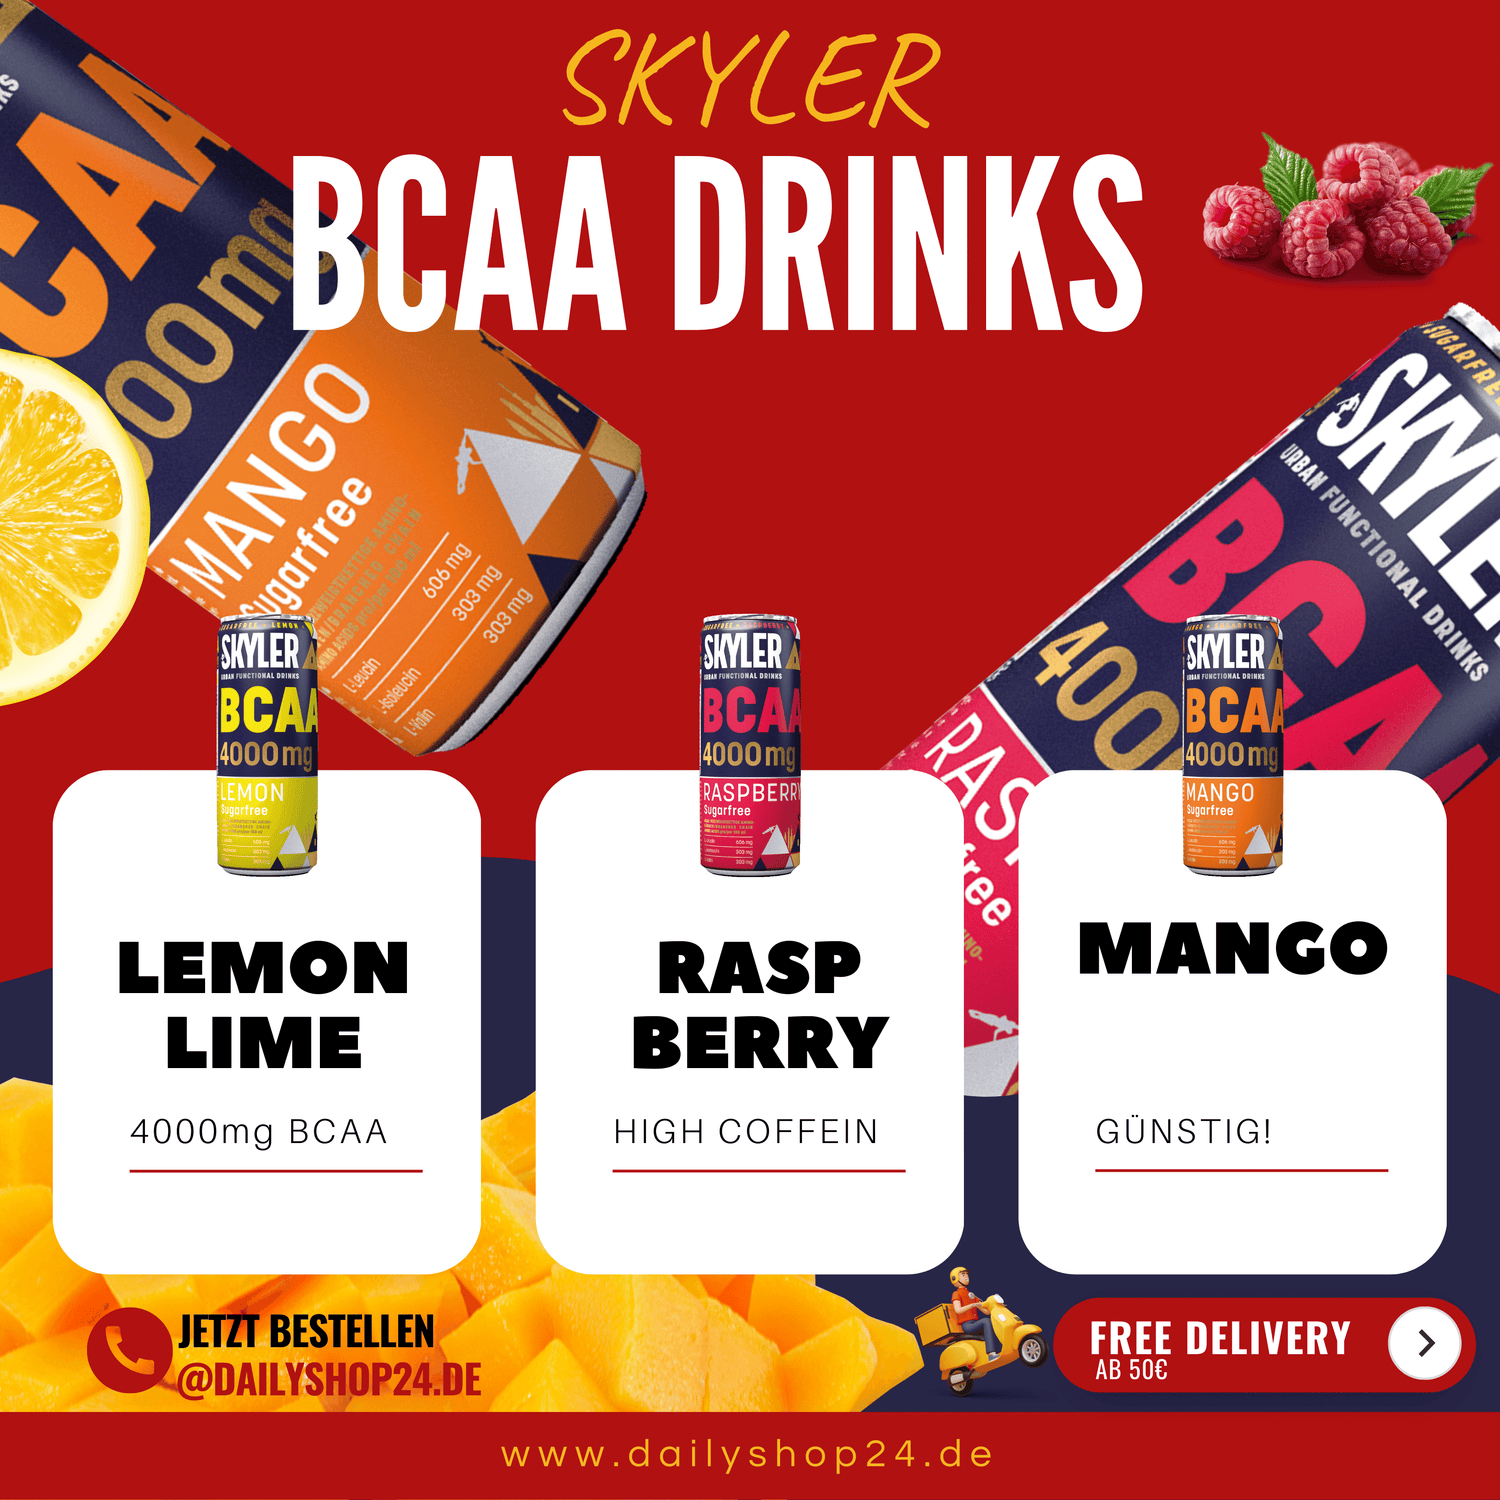 Skyler BCAA Drink in drei Sorten Mango, Himbeere und Lemon mit produktinformatione vor rotem Hintergrund mit vielen Aminosäuren und erhöhtem Koffein jetzt kaufen auf Dailyshop24.de!